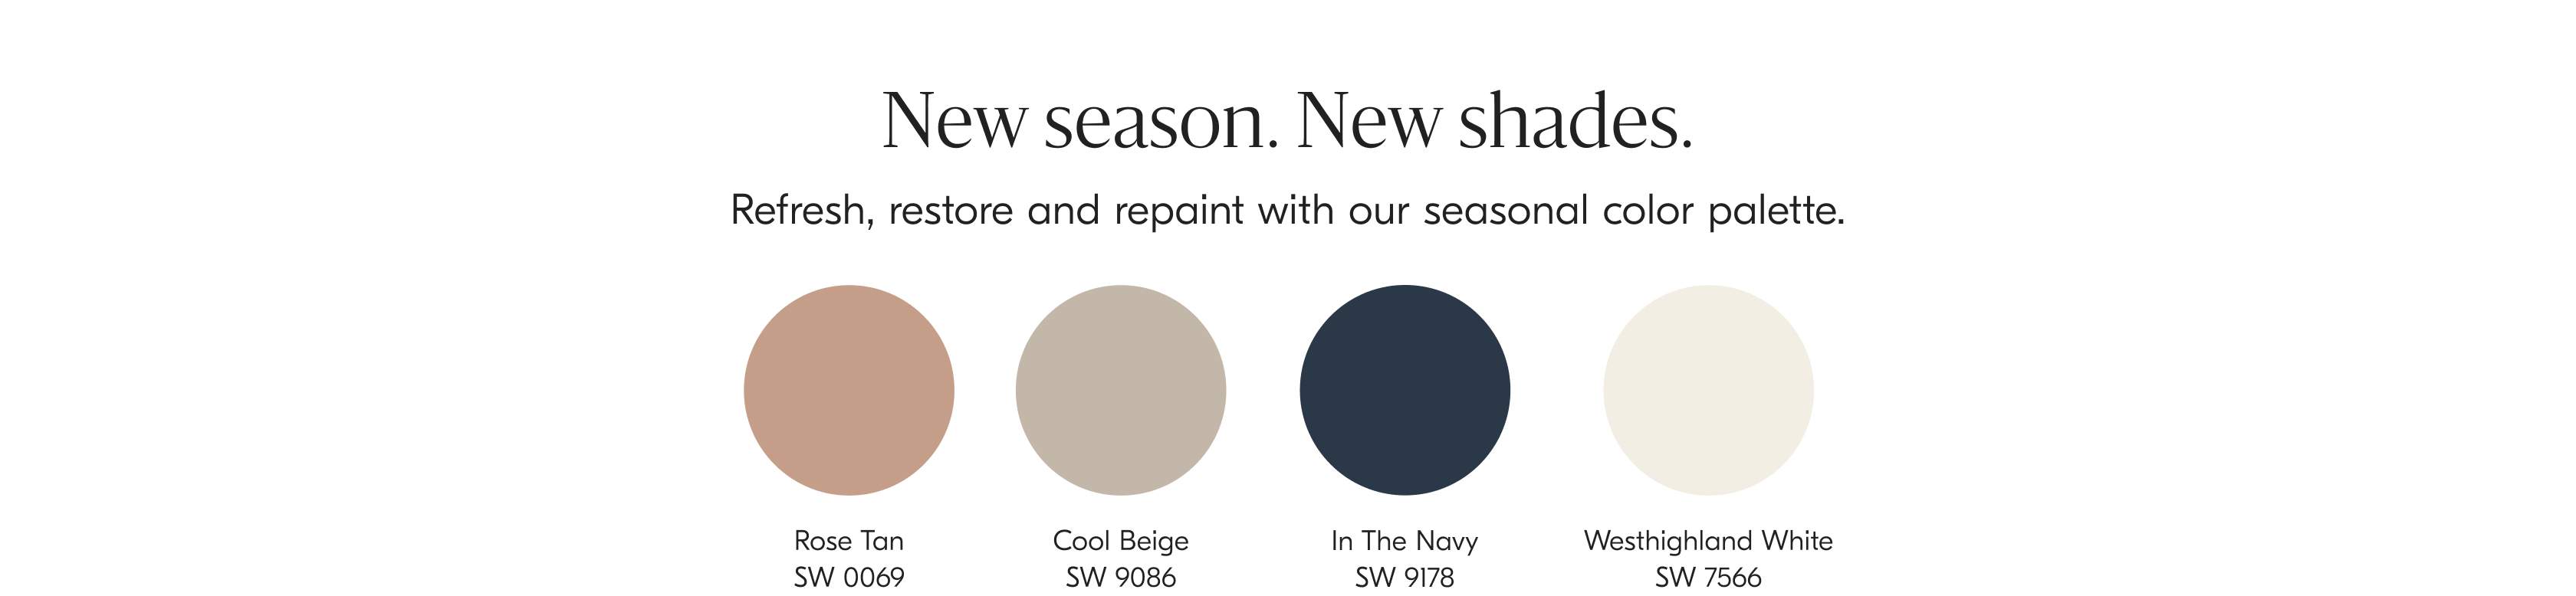 New season. New shades.